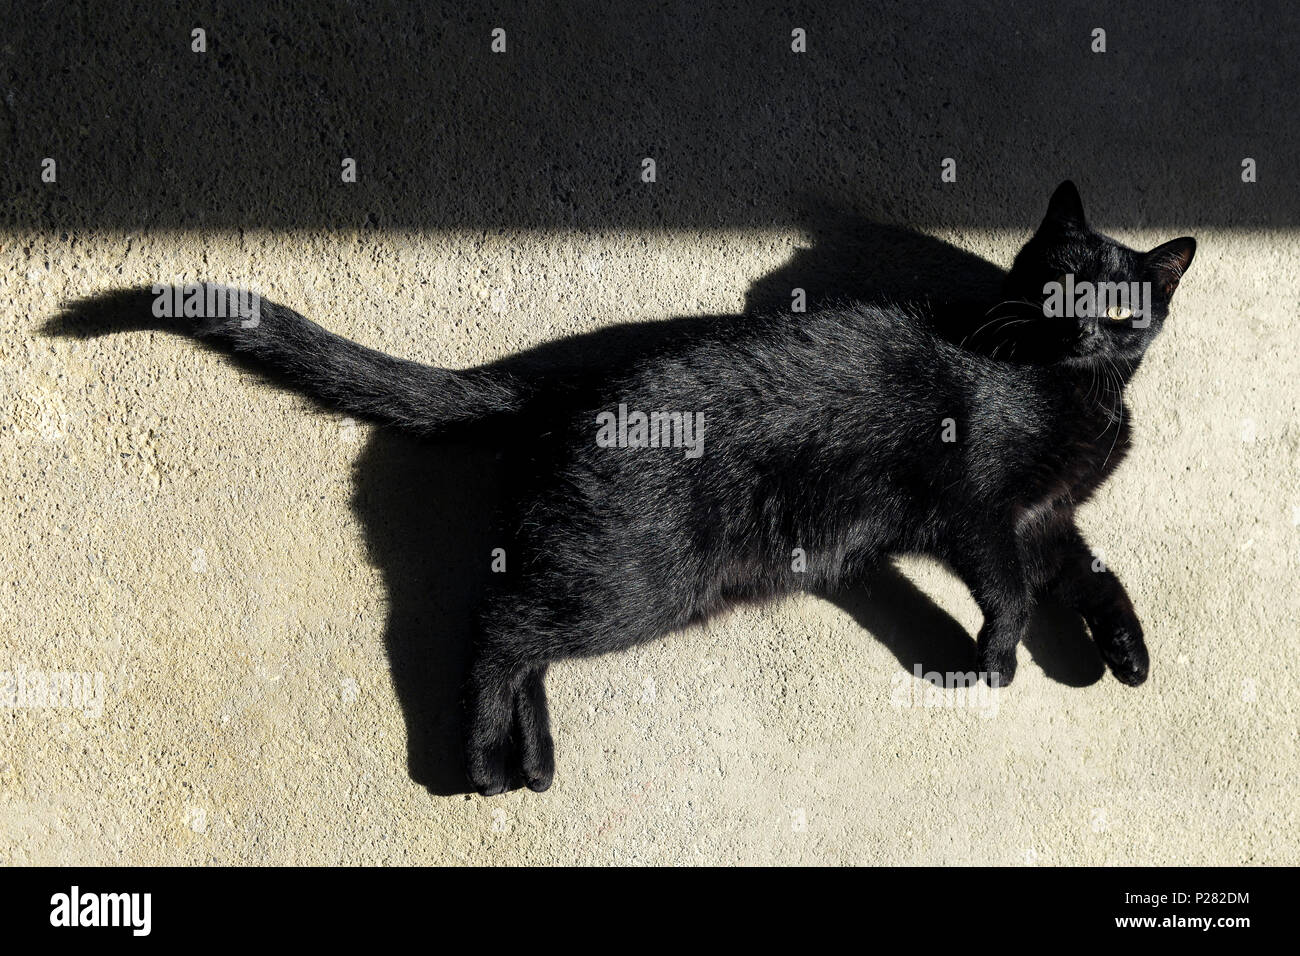 Black cat sun bathing on a floor with shadows Stock Photo